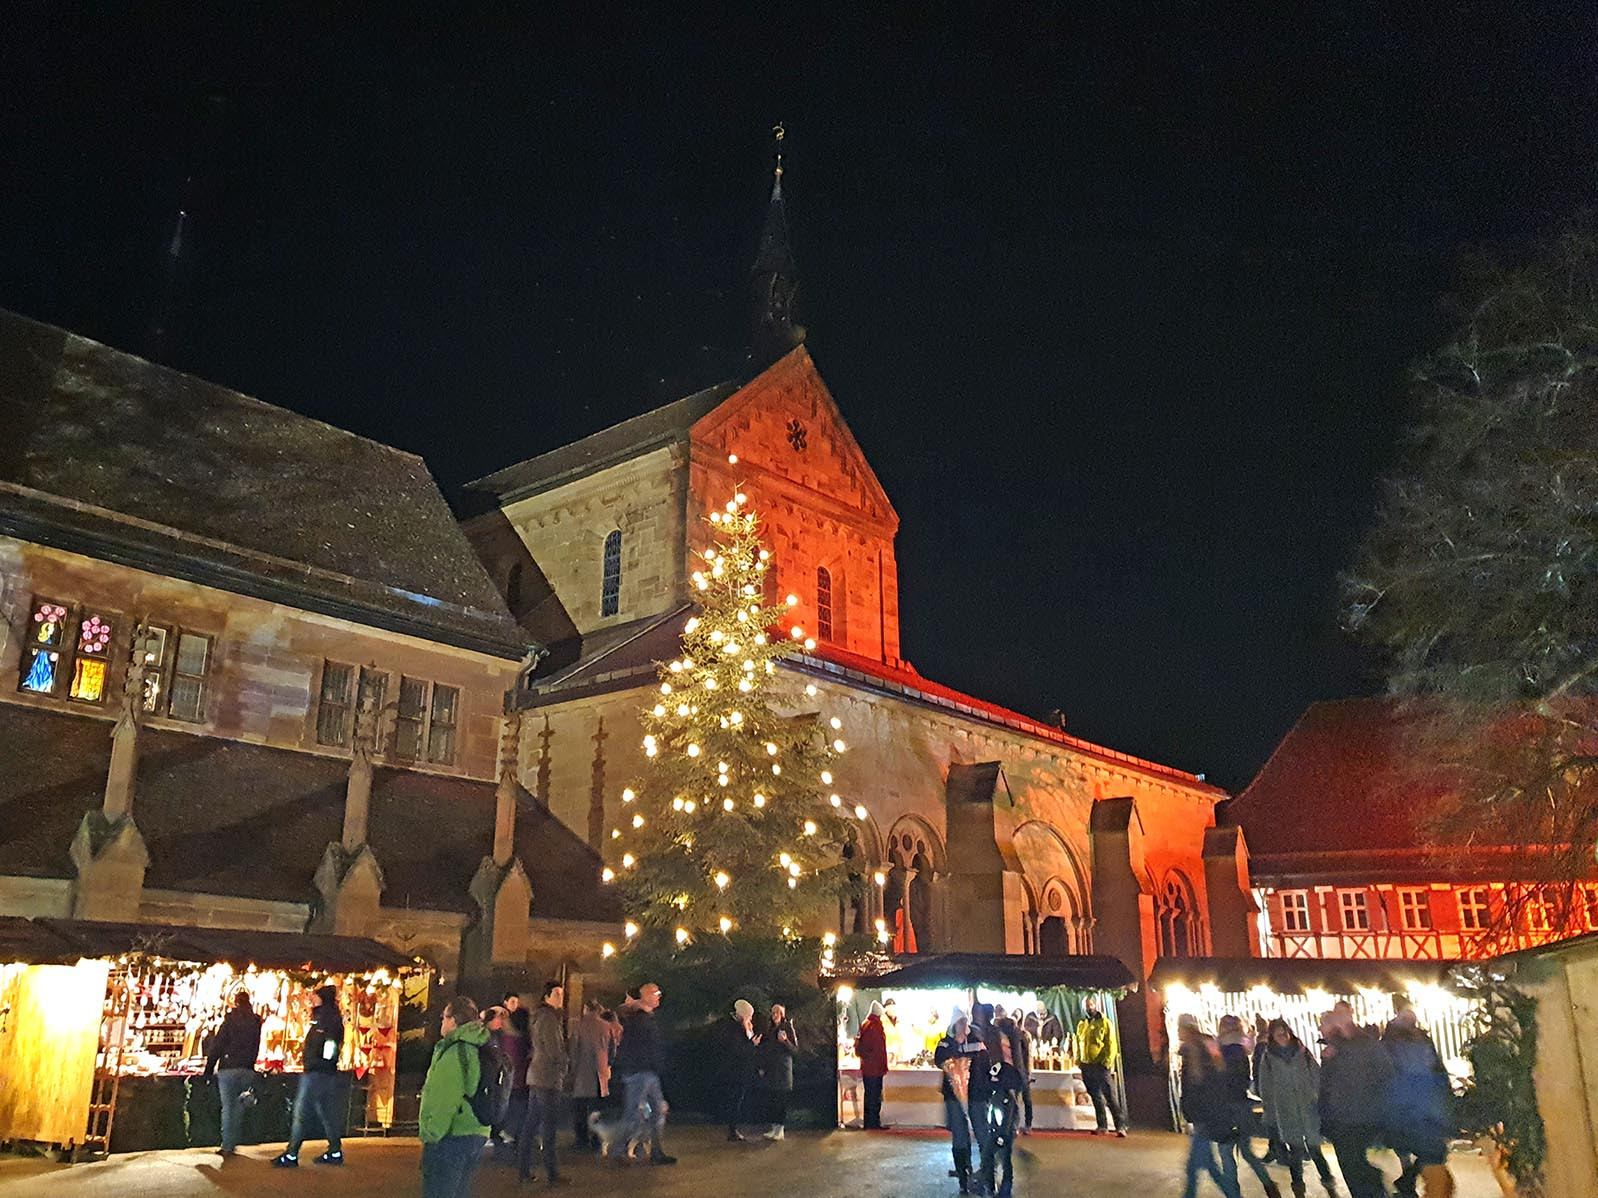 Stimmungsvoller Blick auf die Klosterkirche mit Weihnachtsbaum und Weihnachtsmarktstand